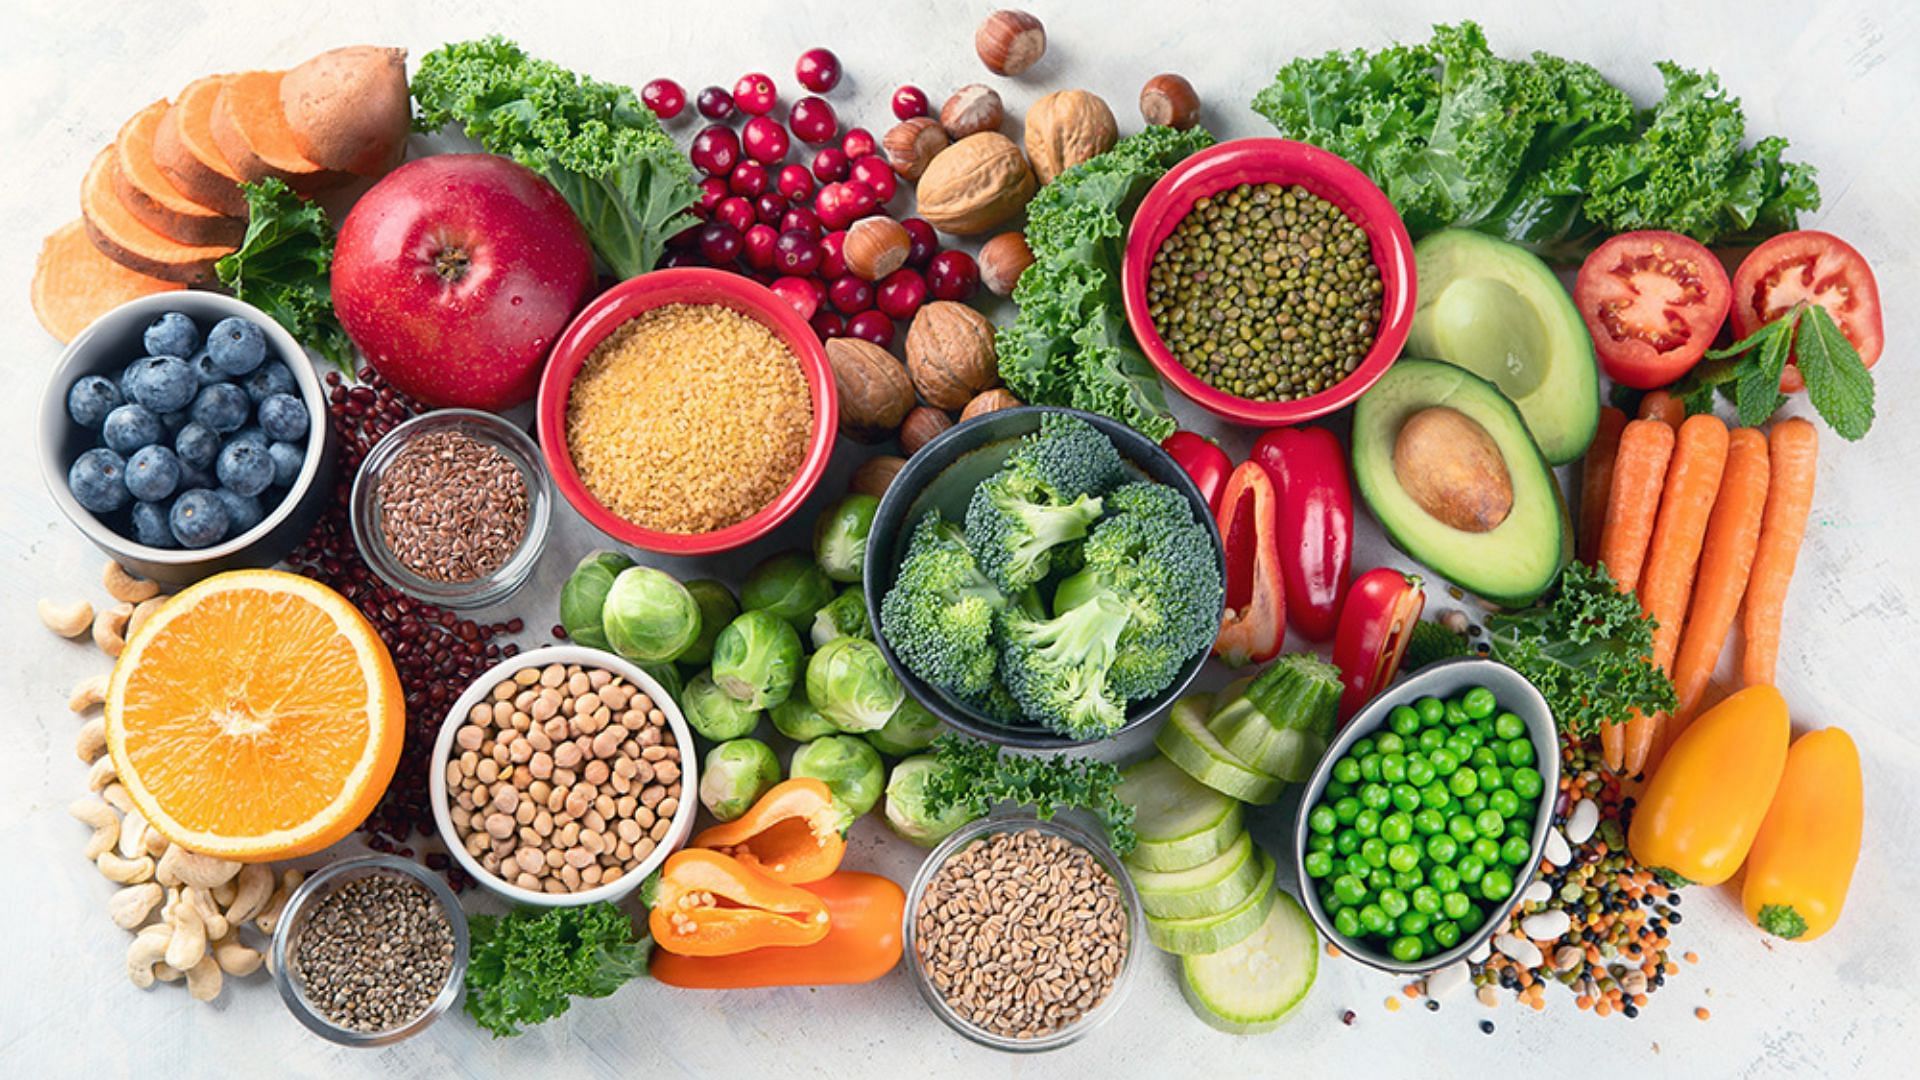 फलों, सब्जियों, साबुत अनाज और दुबले प्रोटीन!